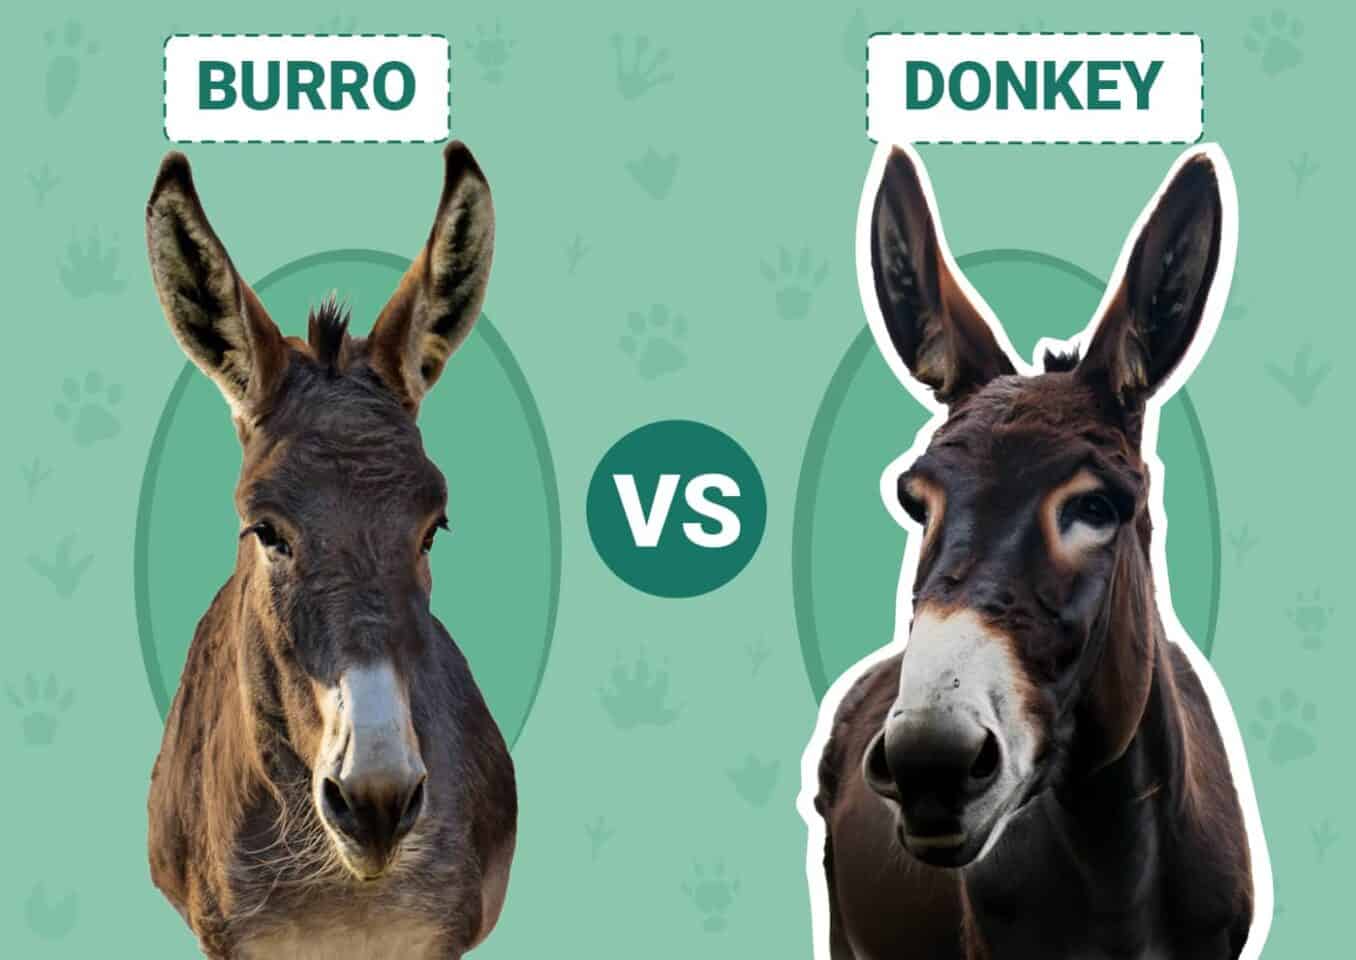 Burro vs Donkey